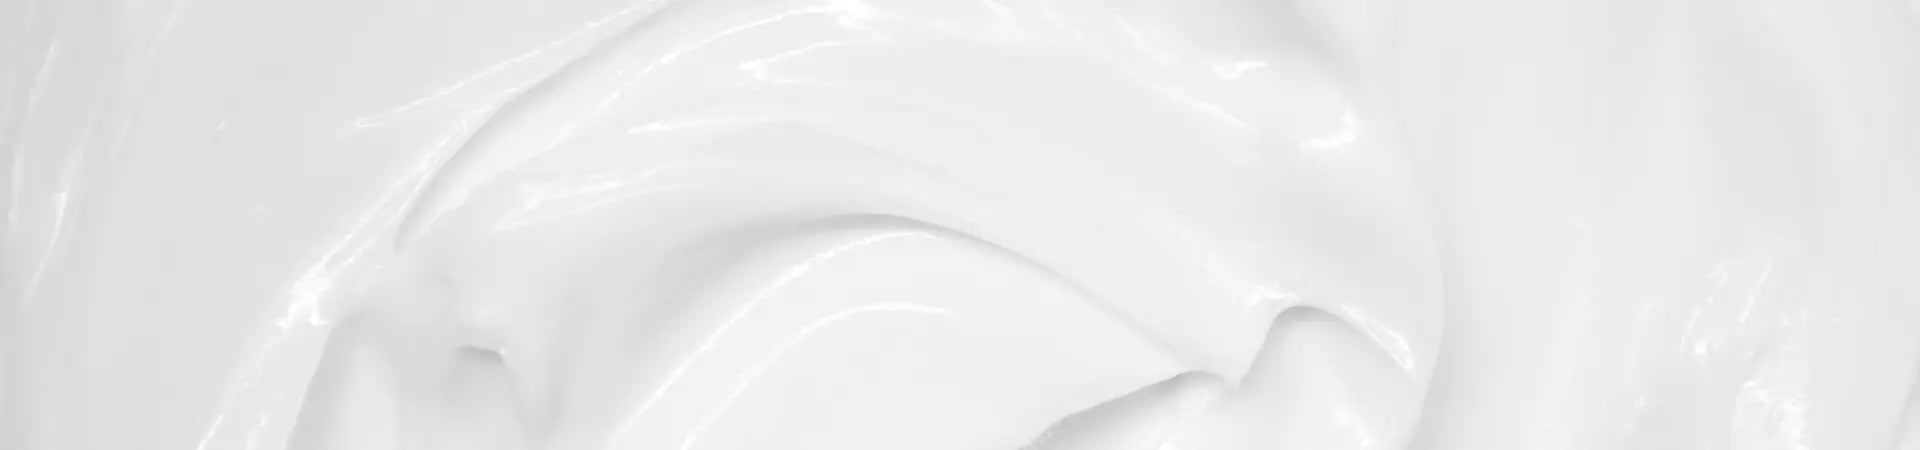 white rich cream texture zoom in